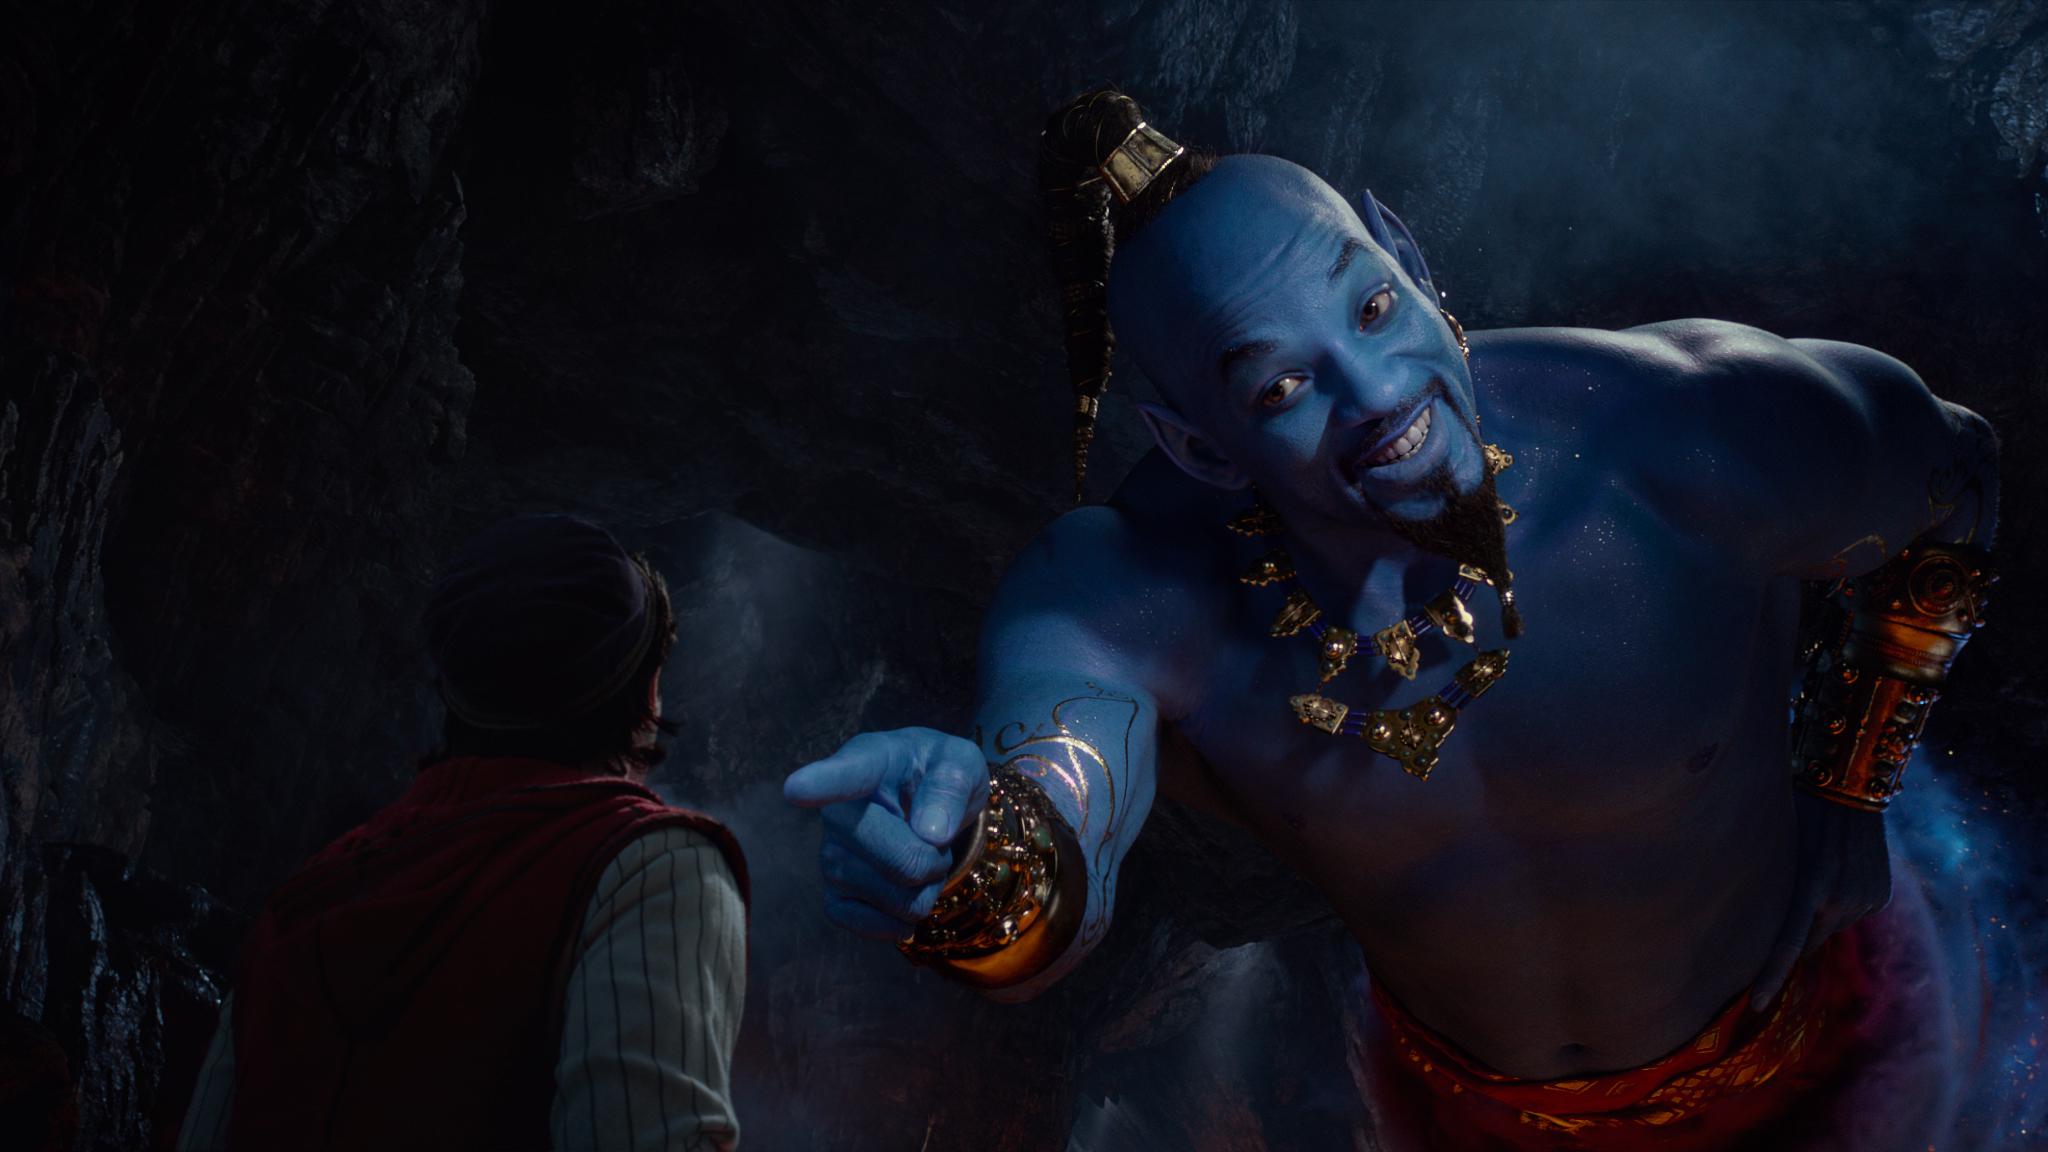 La versión original de "Aladdin" fue producida por Walt Disney Feature Animation y se estrenó en 1992. (Foto: Difusión)